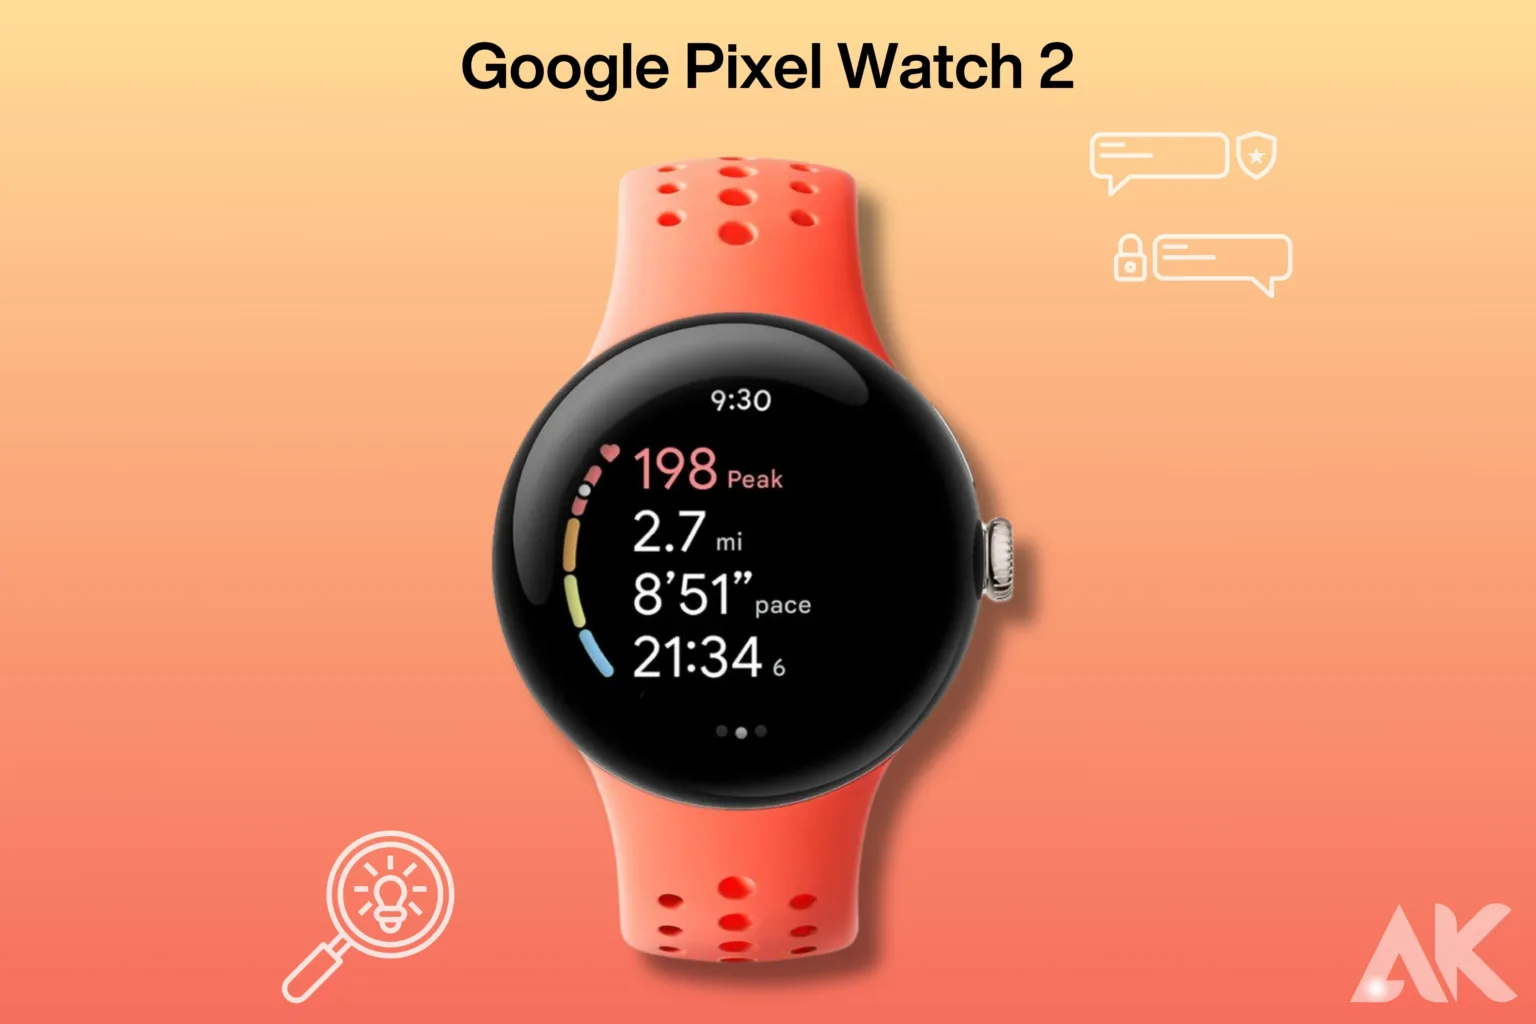 Google Pixel Watch 2 features